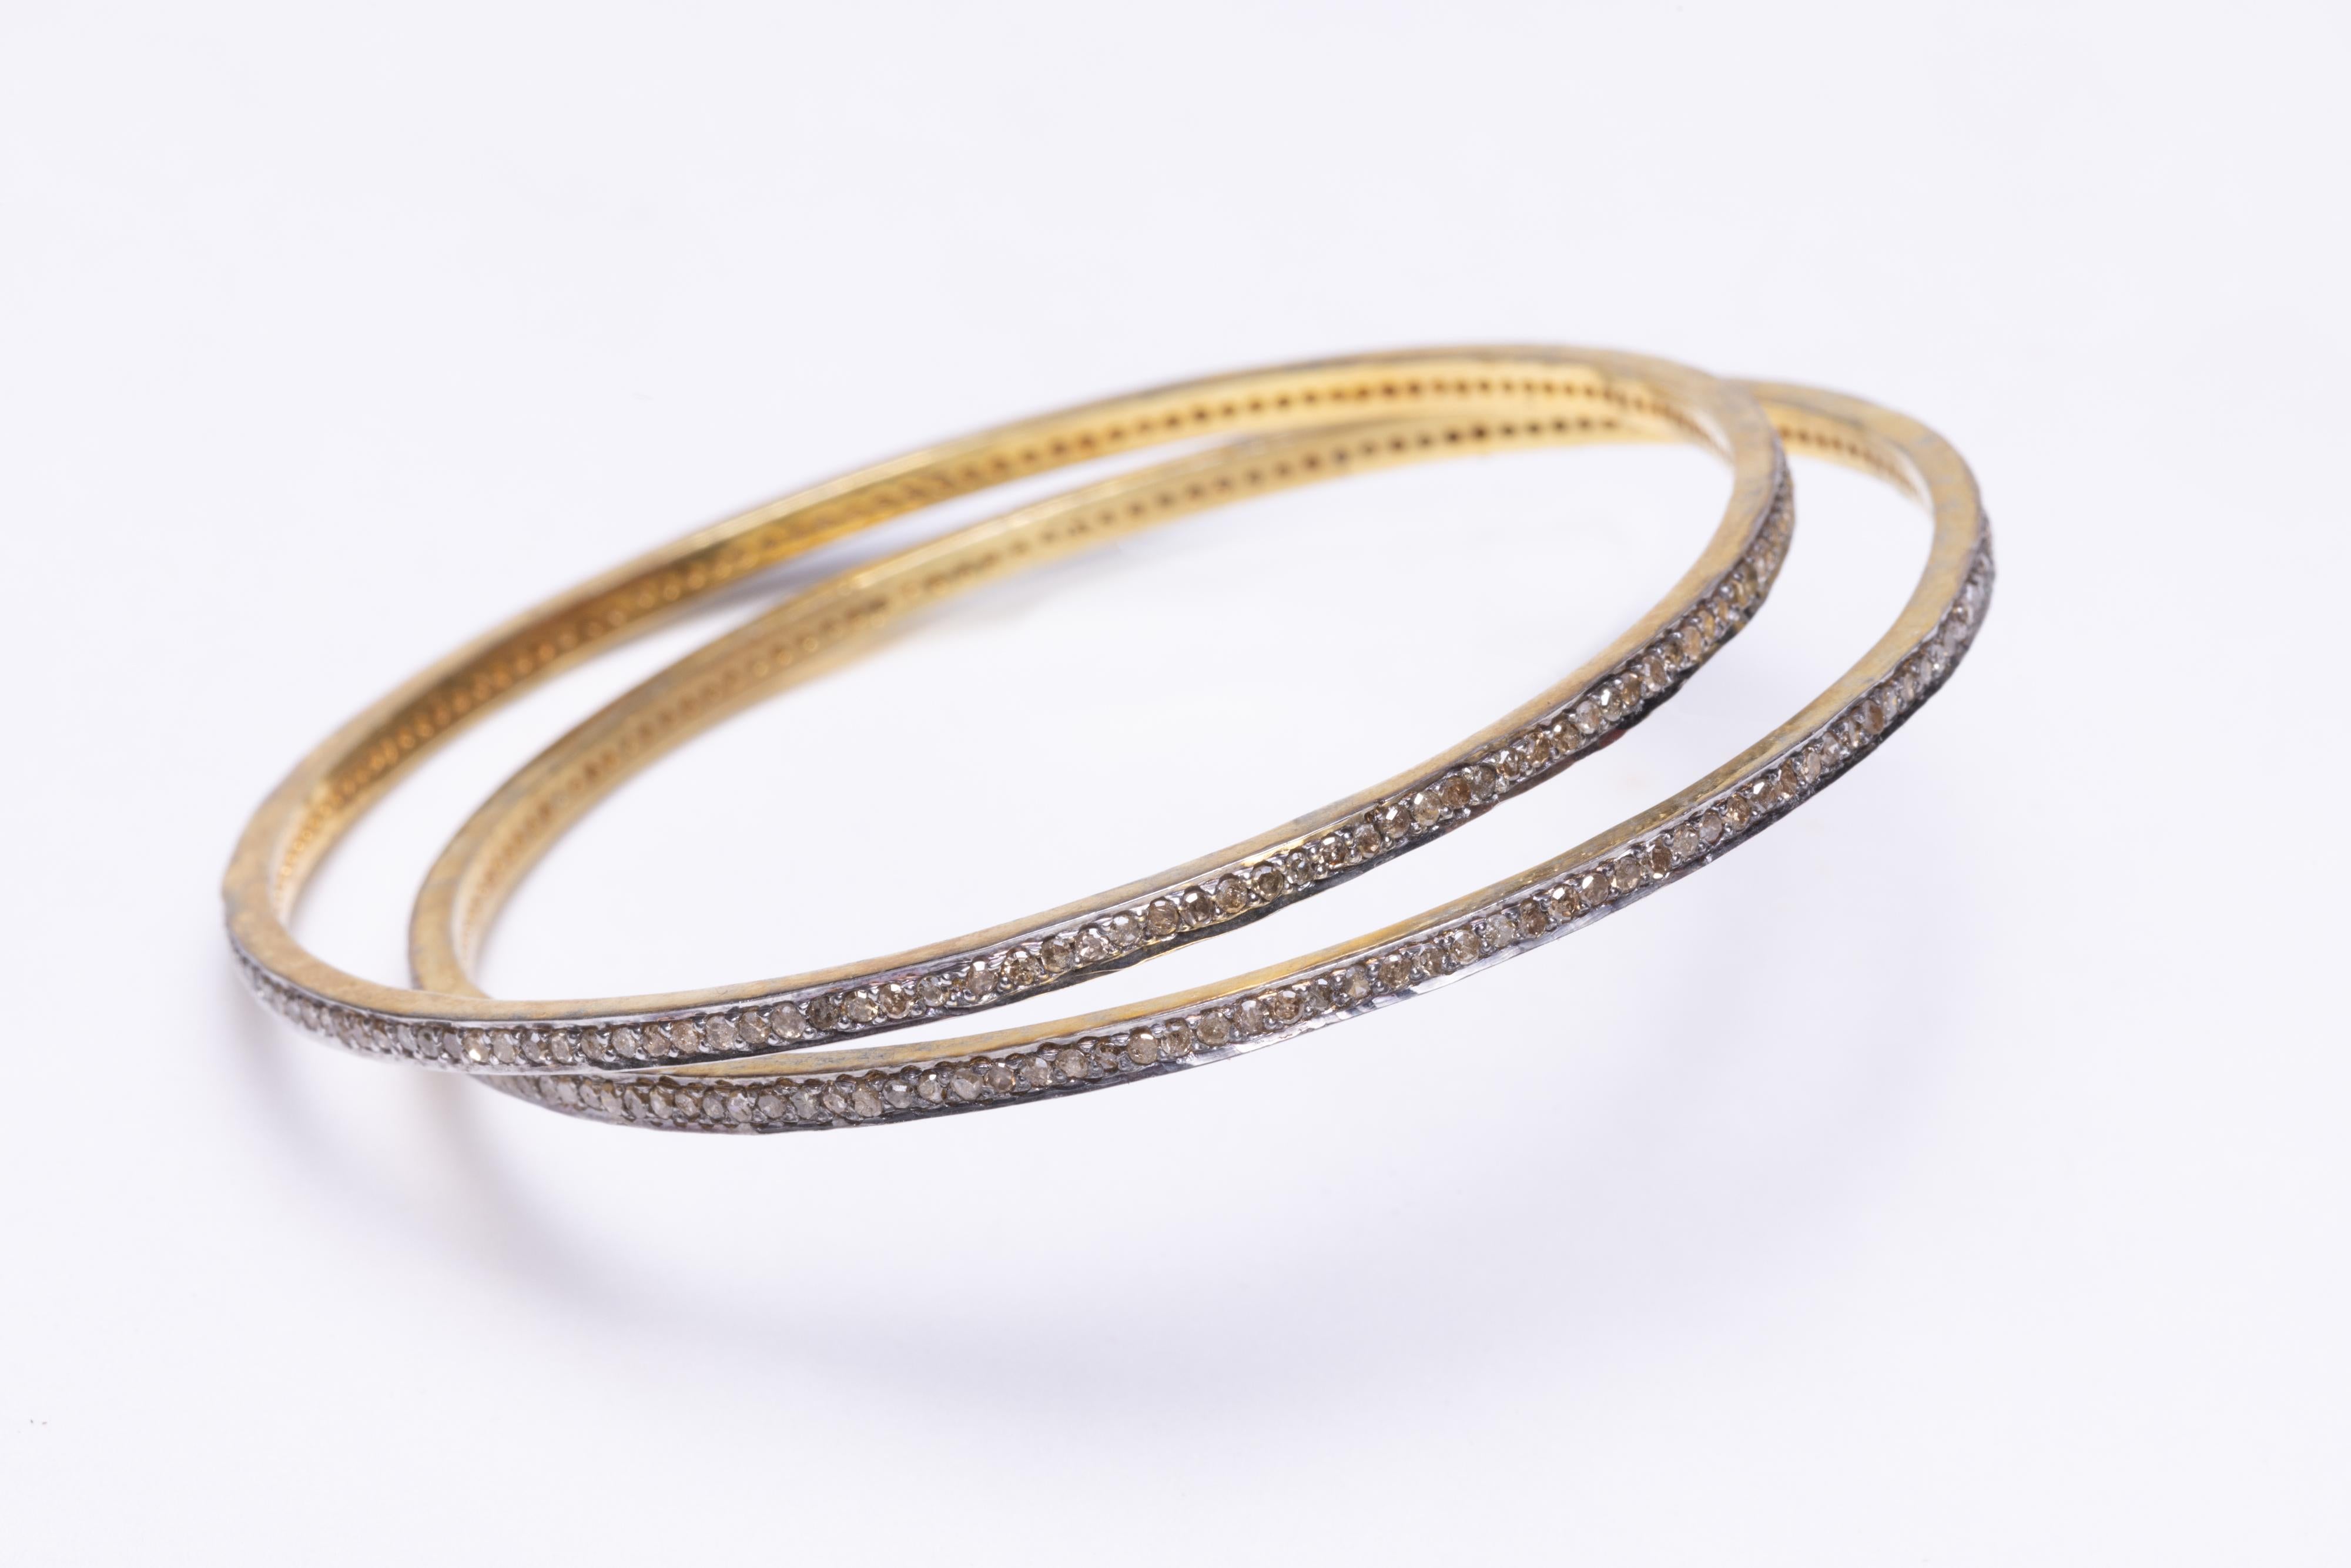   Ces bracelets en diamants pavés peuvent être portés seuls, en groupe ou avec d'autres bracelets de votre collection.  Ils se glissent sur la main et leur circonférence intérieure est de 7,5